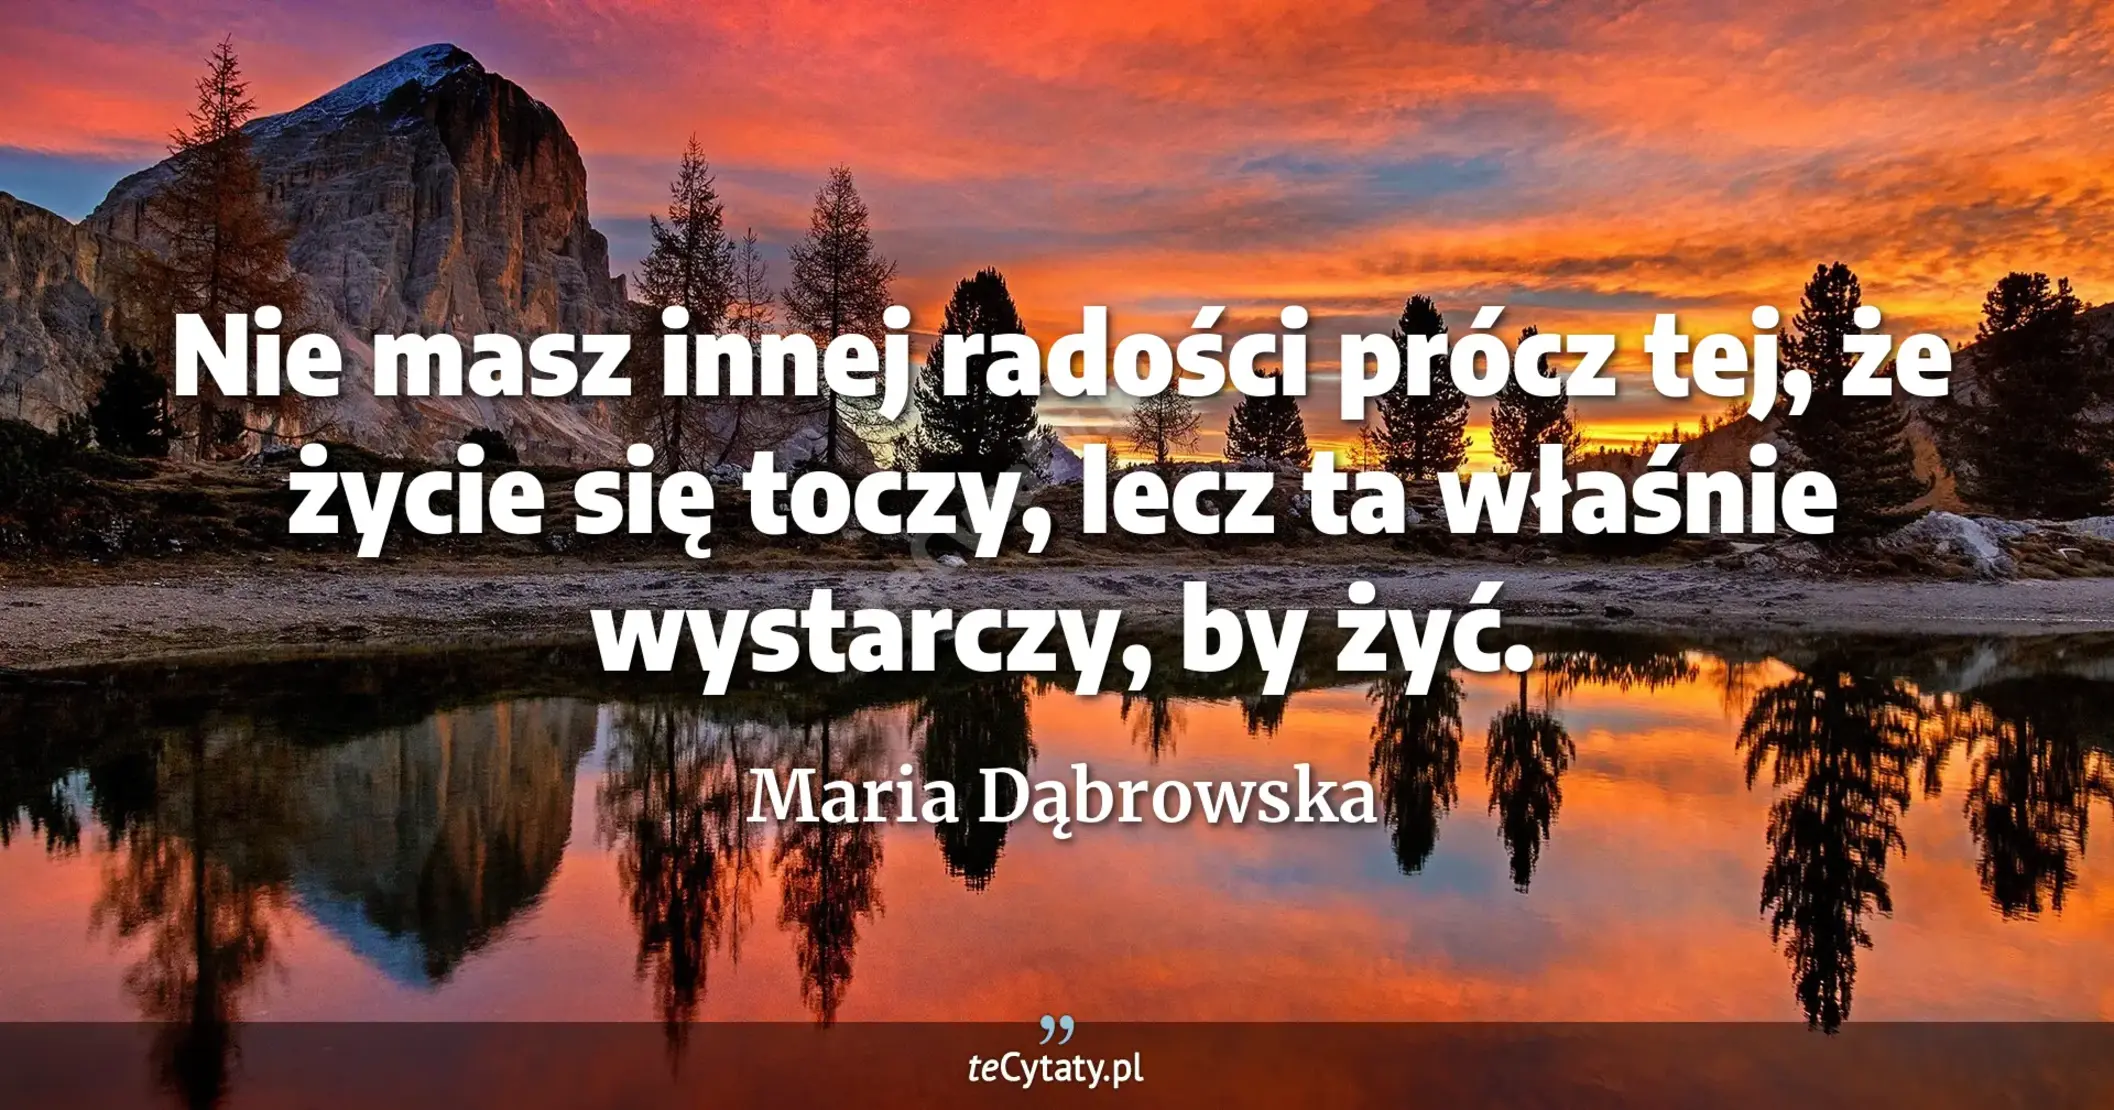 Nie masz innej radości prócz tej, że życie się toczy, lecz ta właśnie wystarczy, by żyć. - Maria Dąbrowska